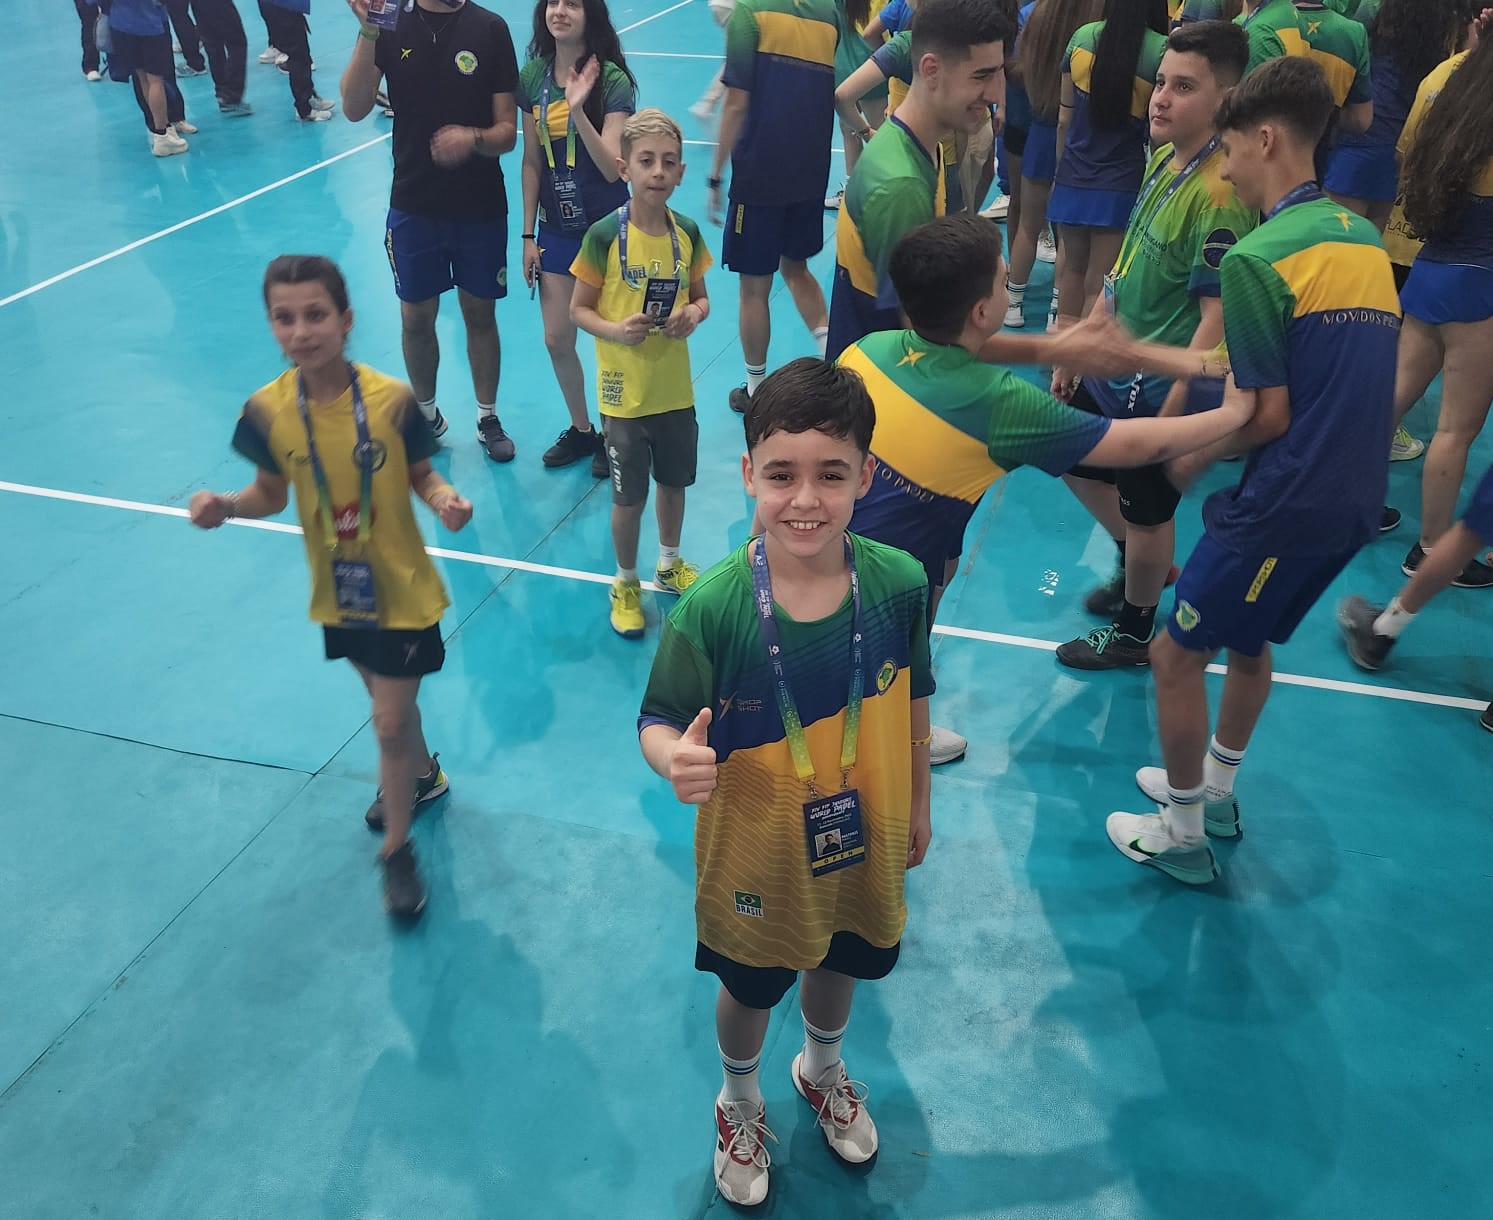 14º Campeonato Mundial padel juniores no Paraguai